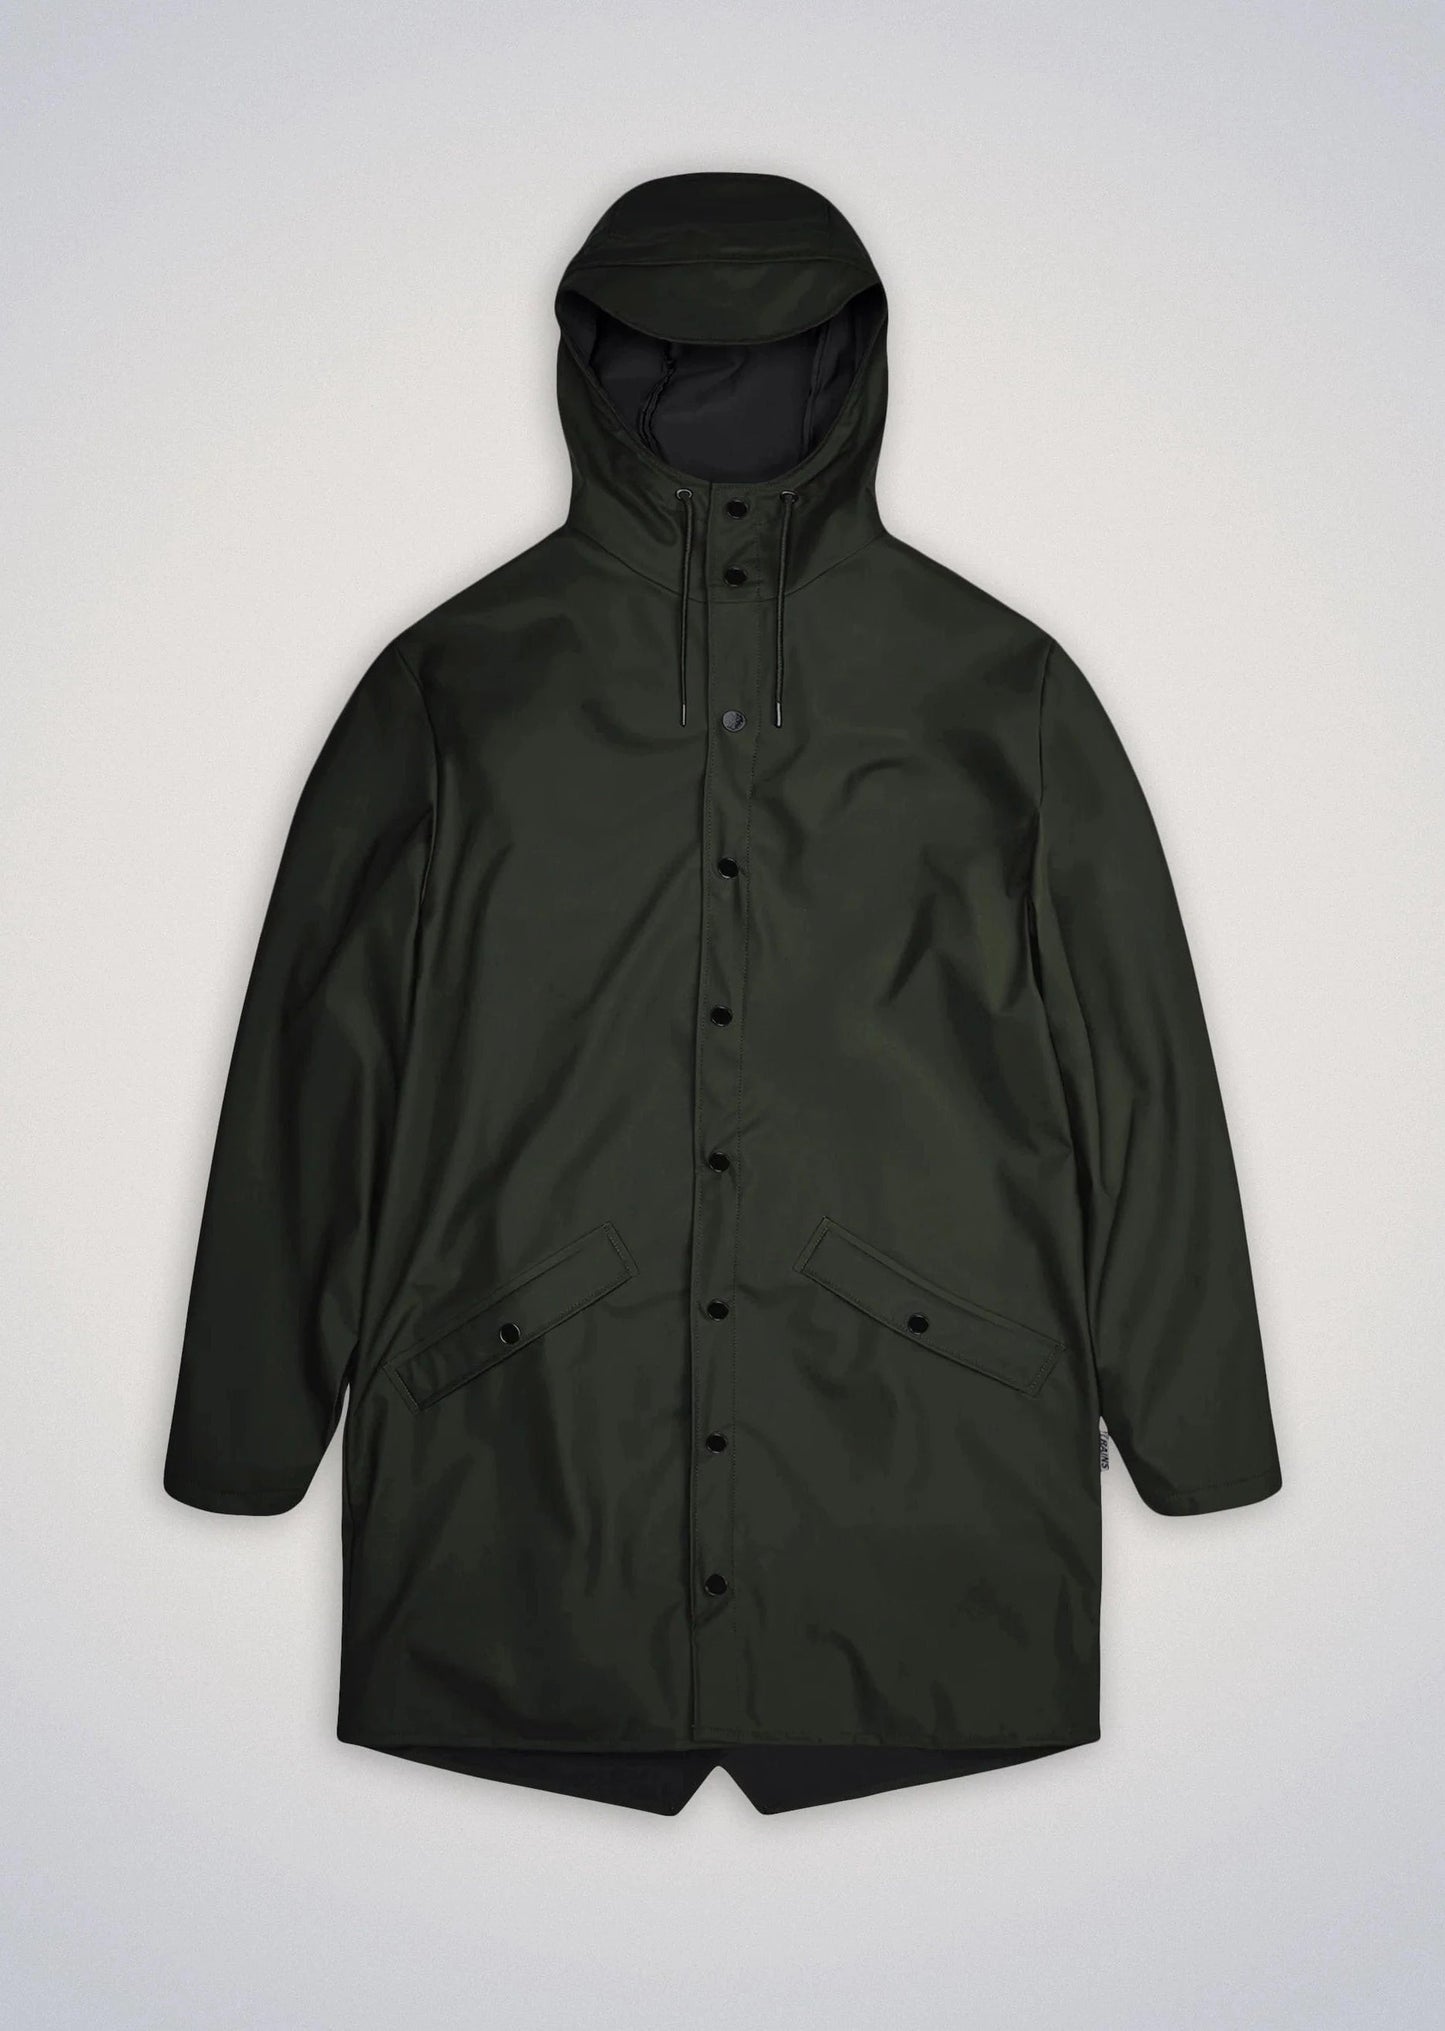 Rains Veste/Blouson Green / XXS Imperméable Rains - Long Jacket